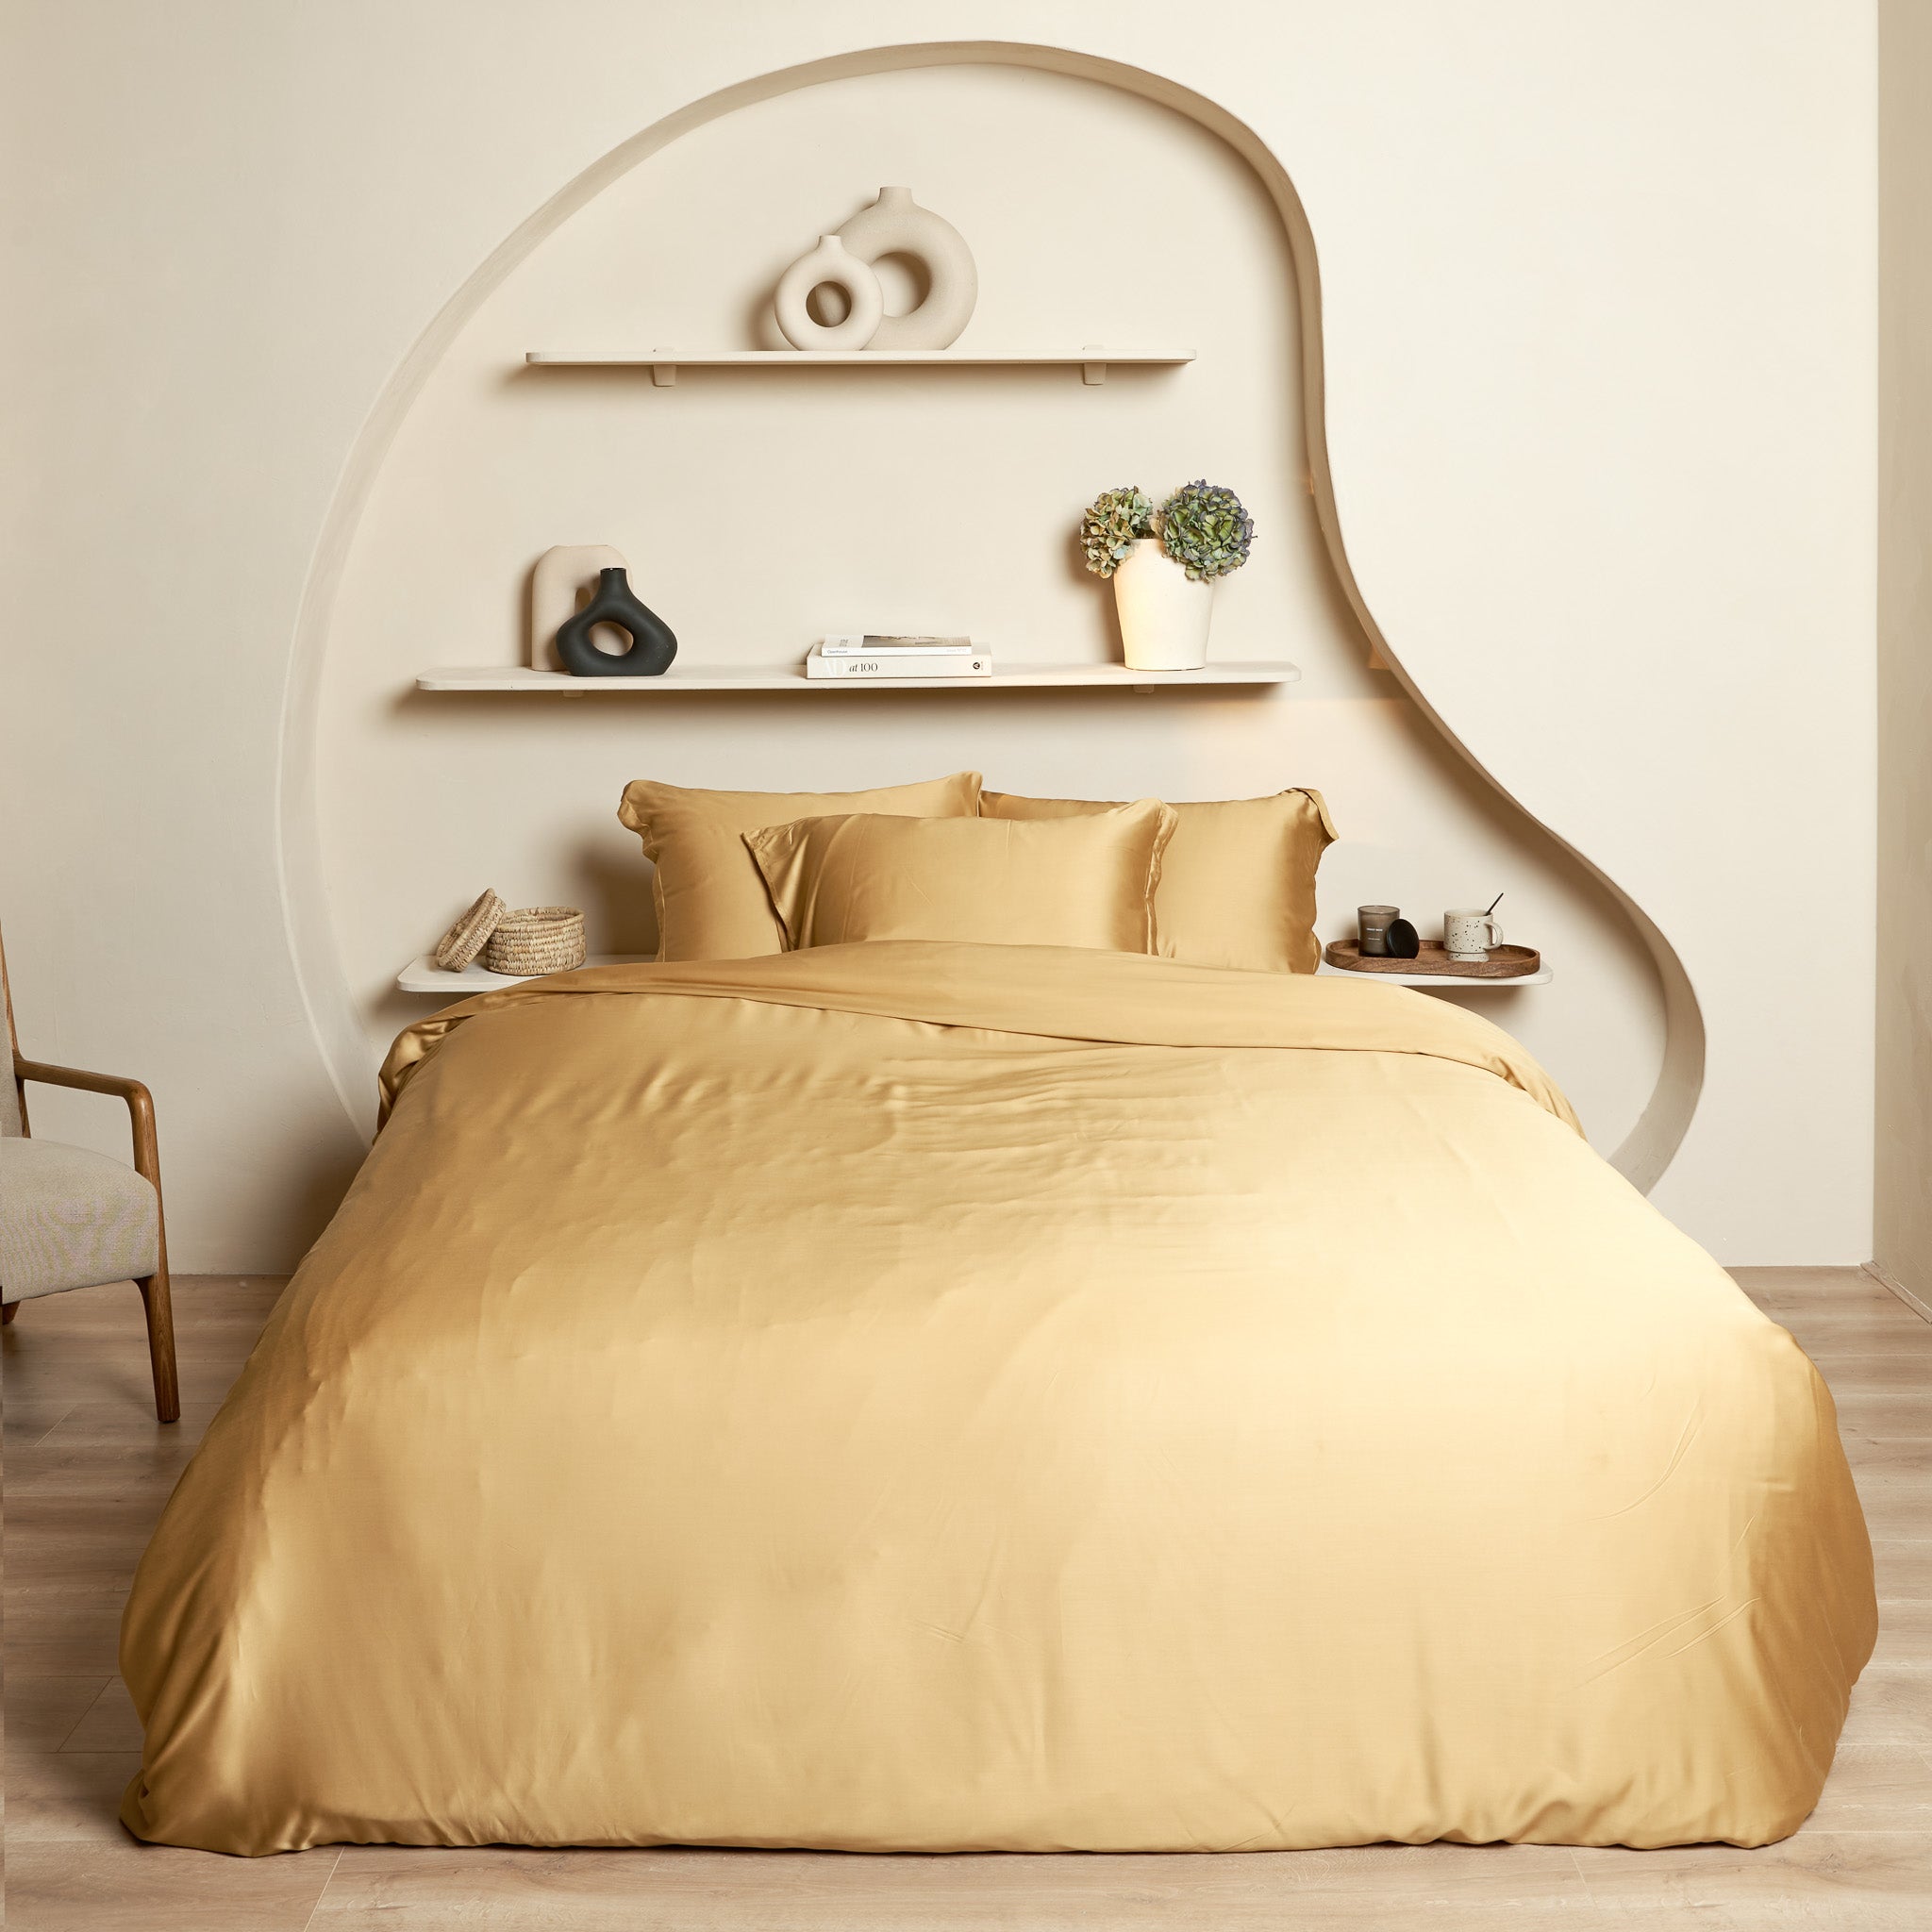 Mooie slaapkamer met opgemaakt bed. Het beddengoed is van hoge kwaliteit eco bamboe dekbedovertrek, hoeslaken en kussenslopen.